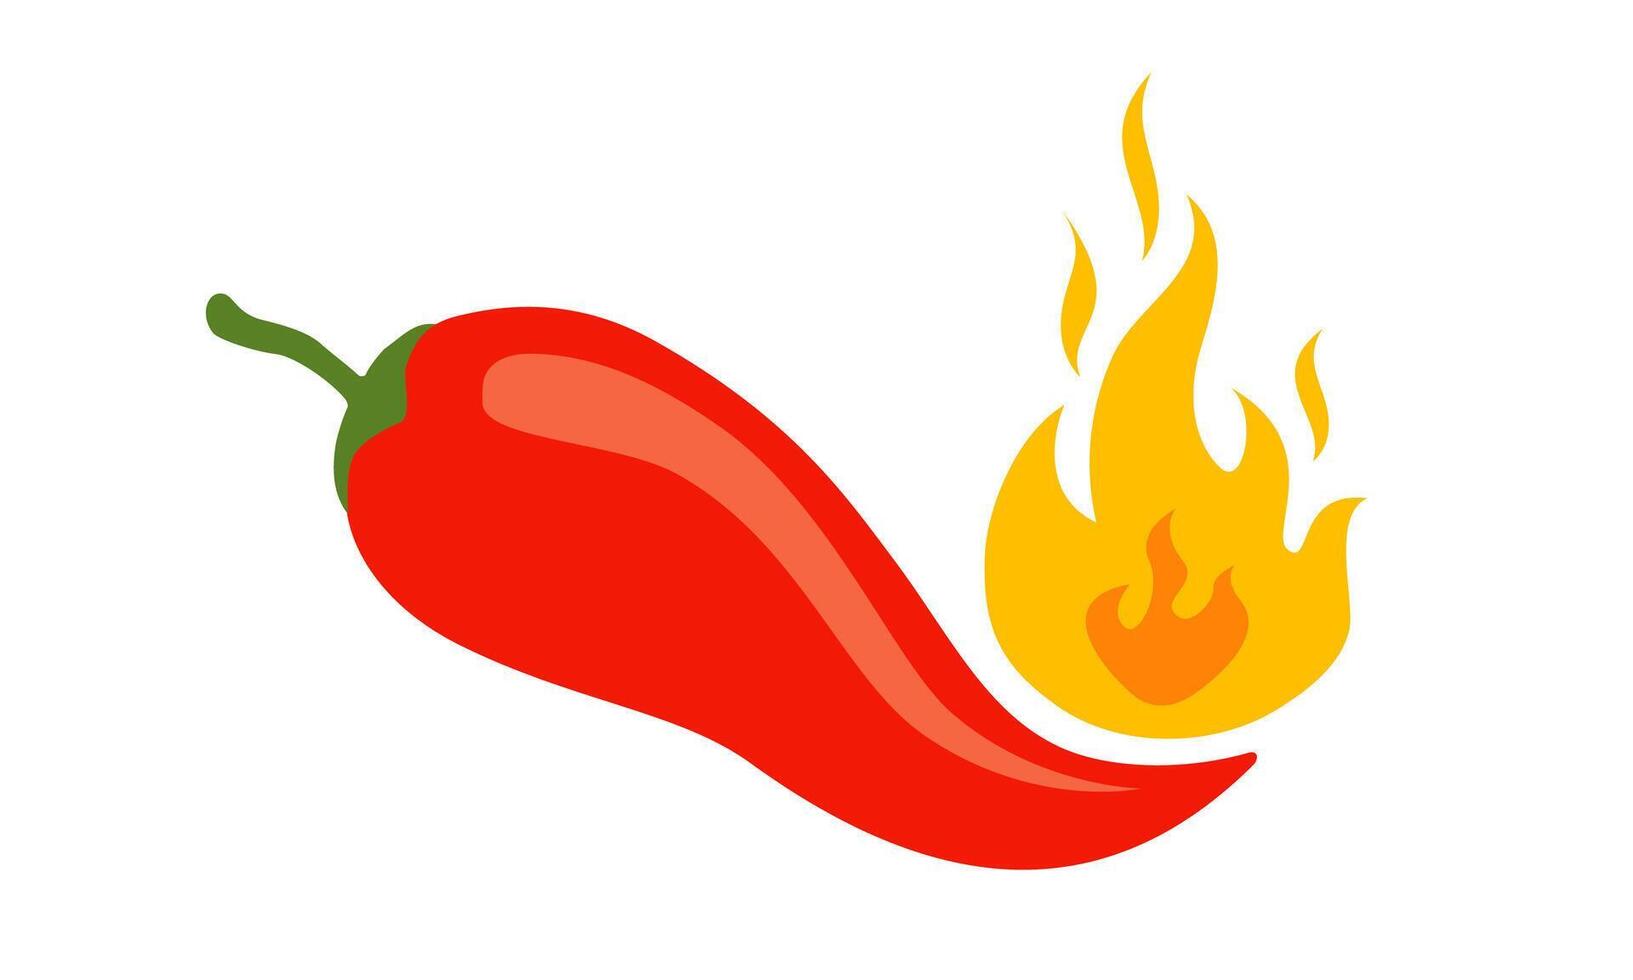 vetor ilustração do uma picante Pimenta Pimenta com chama. desenho animado vermelho Pimenta para mexicano ou tailandês Comida.